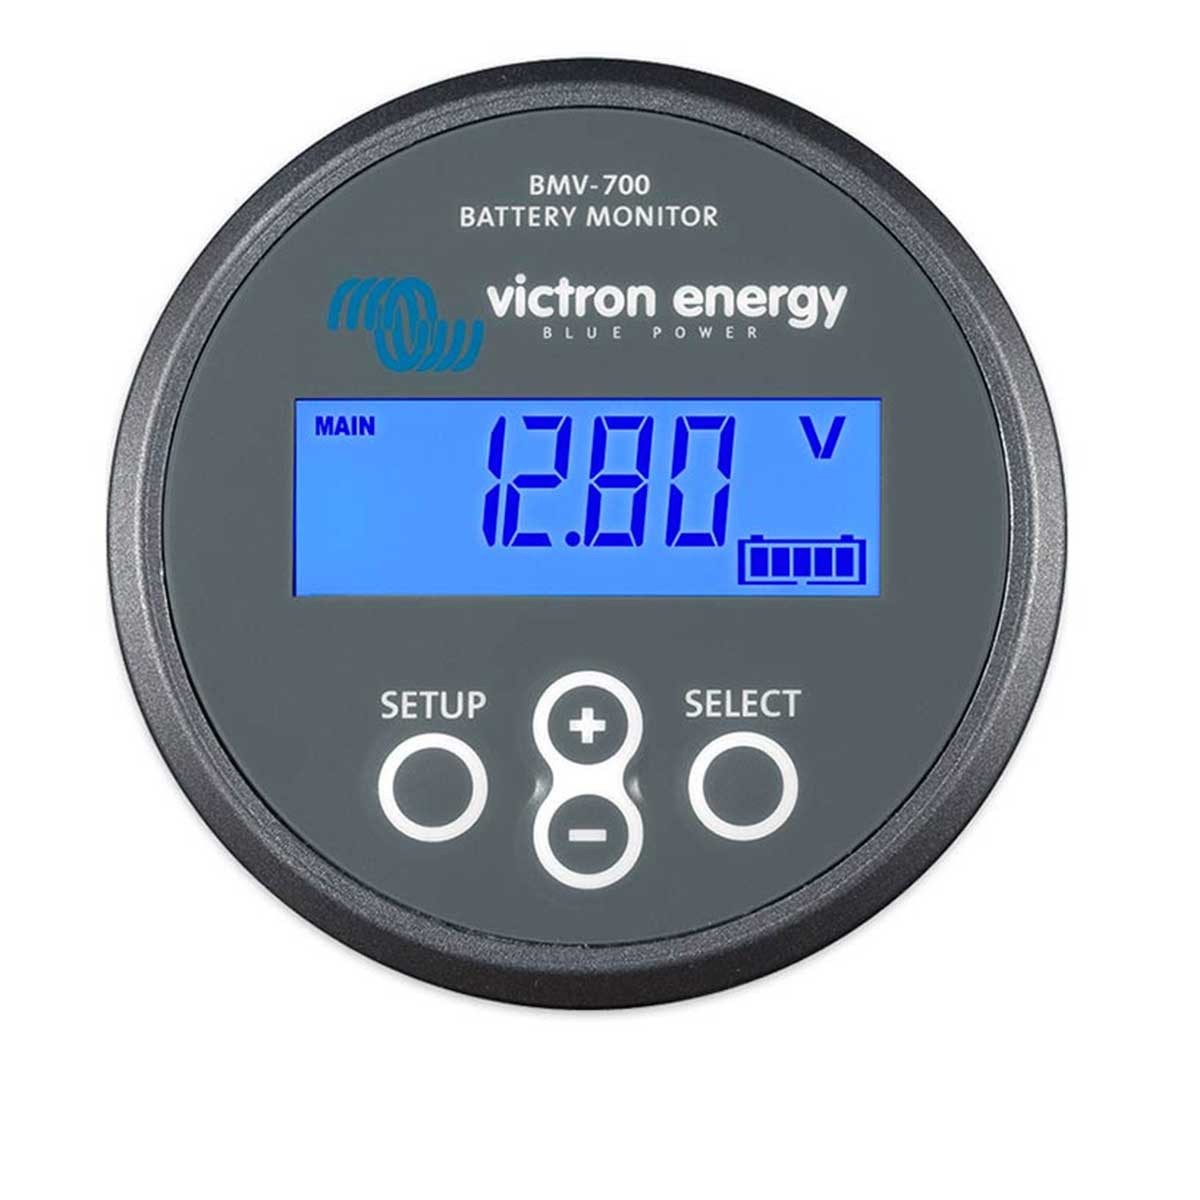 Contrôleur de batterie BMV-700 victron energy